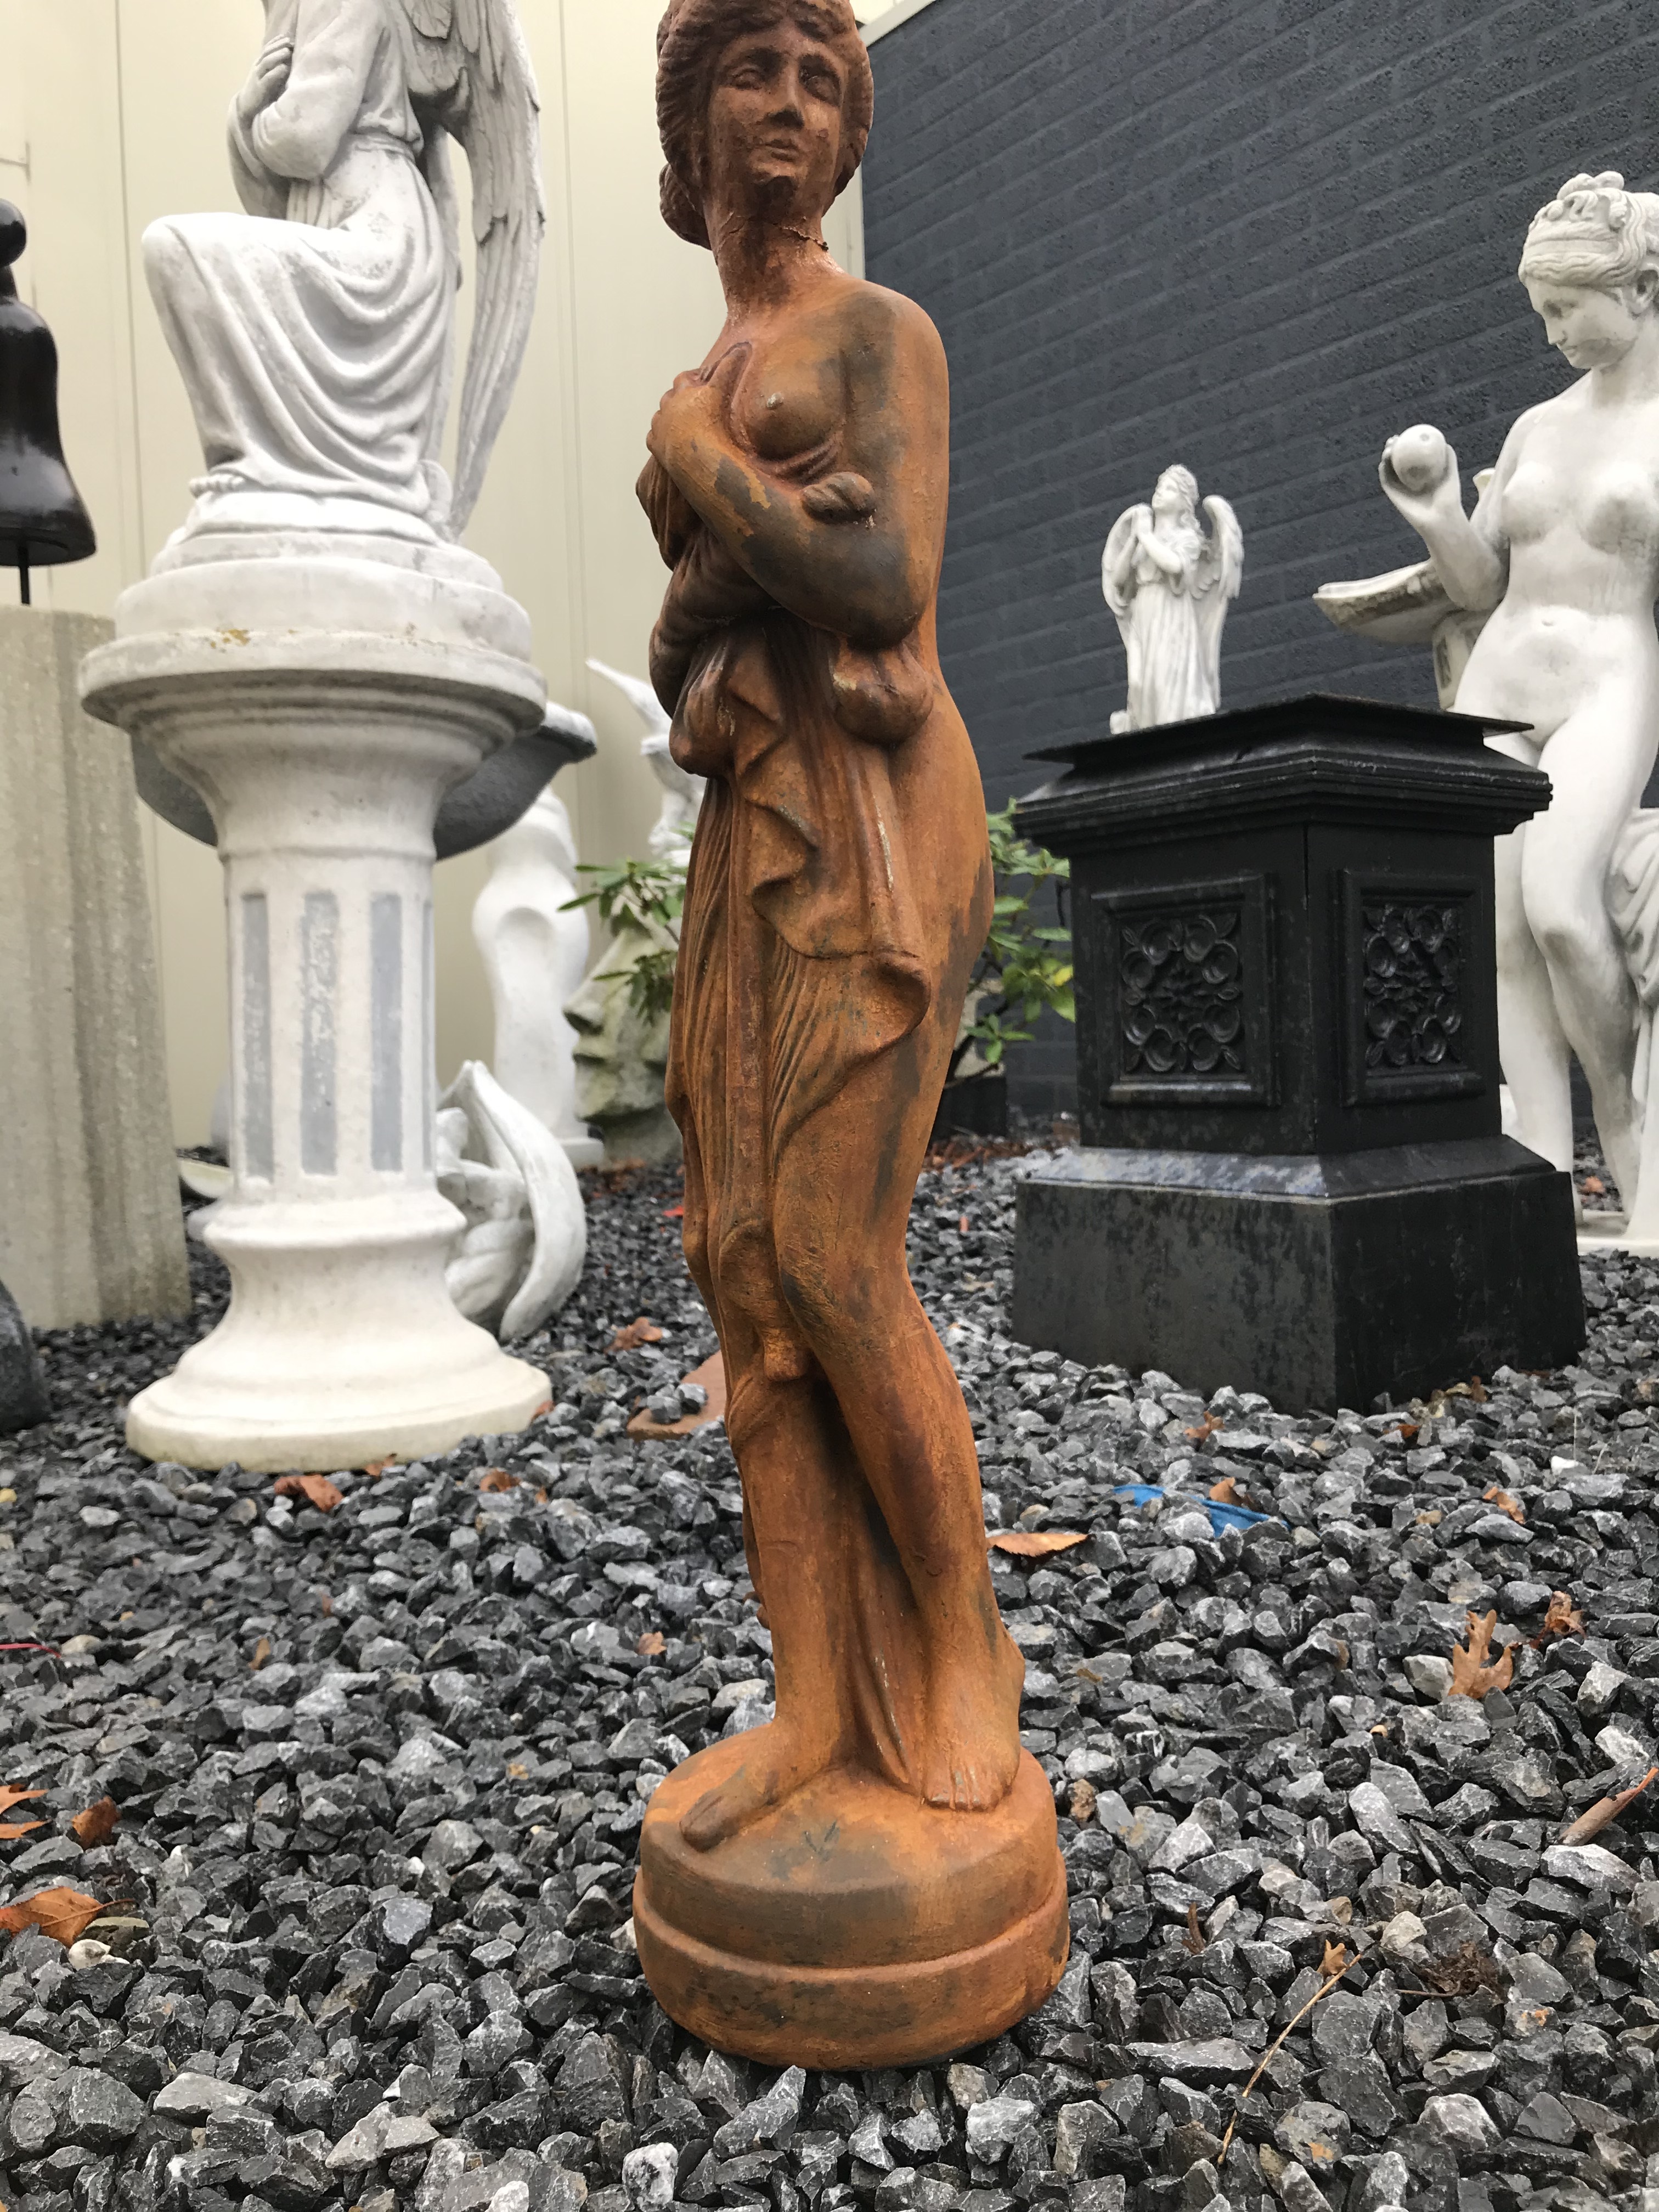 Prachtig vol oxide-rust stenen beeld van een erotisch geklede staande dame, super mooi voor in de tuin!